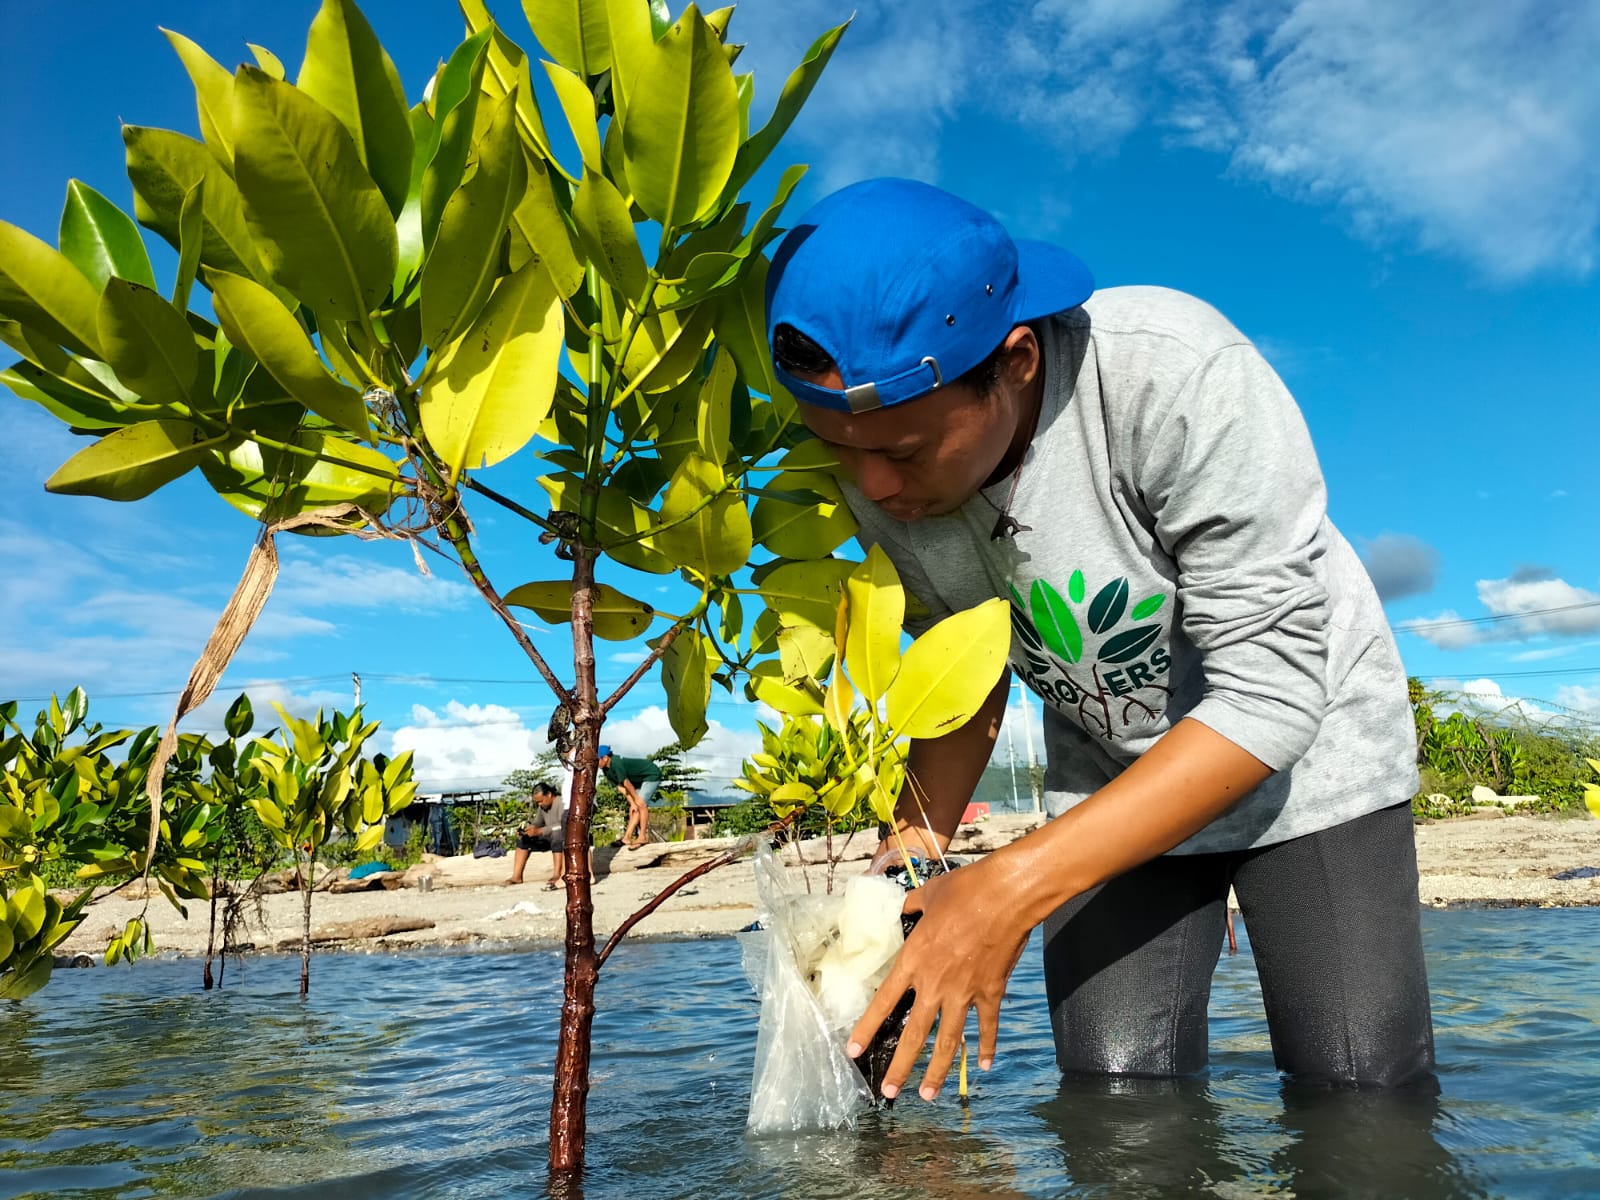 Aktivis seangle Kota Palu sedang membersihkan mangrove yang terjerat sampah plastik di Teluk Palu. (Foto: Ekspedisi Sungai Nusantara)